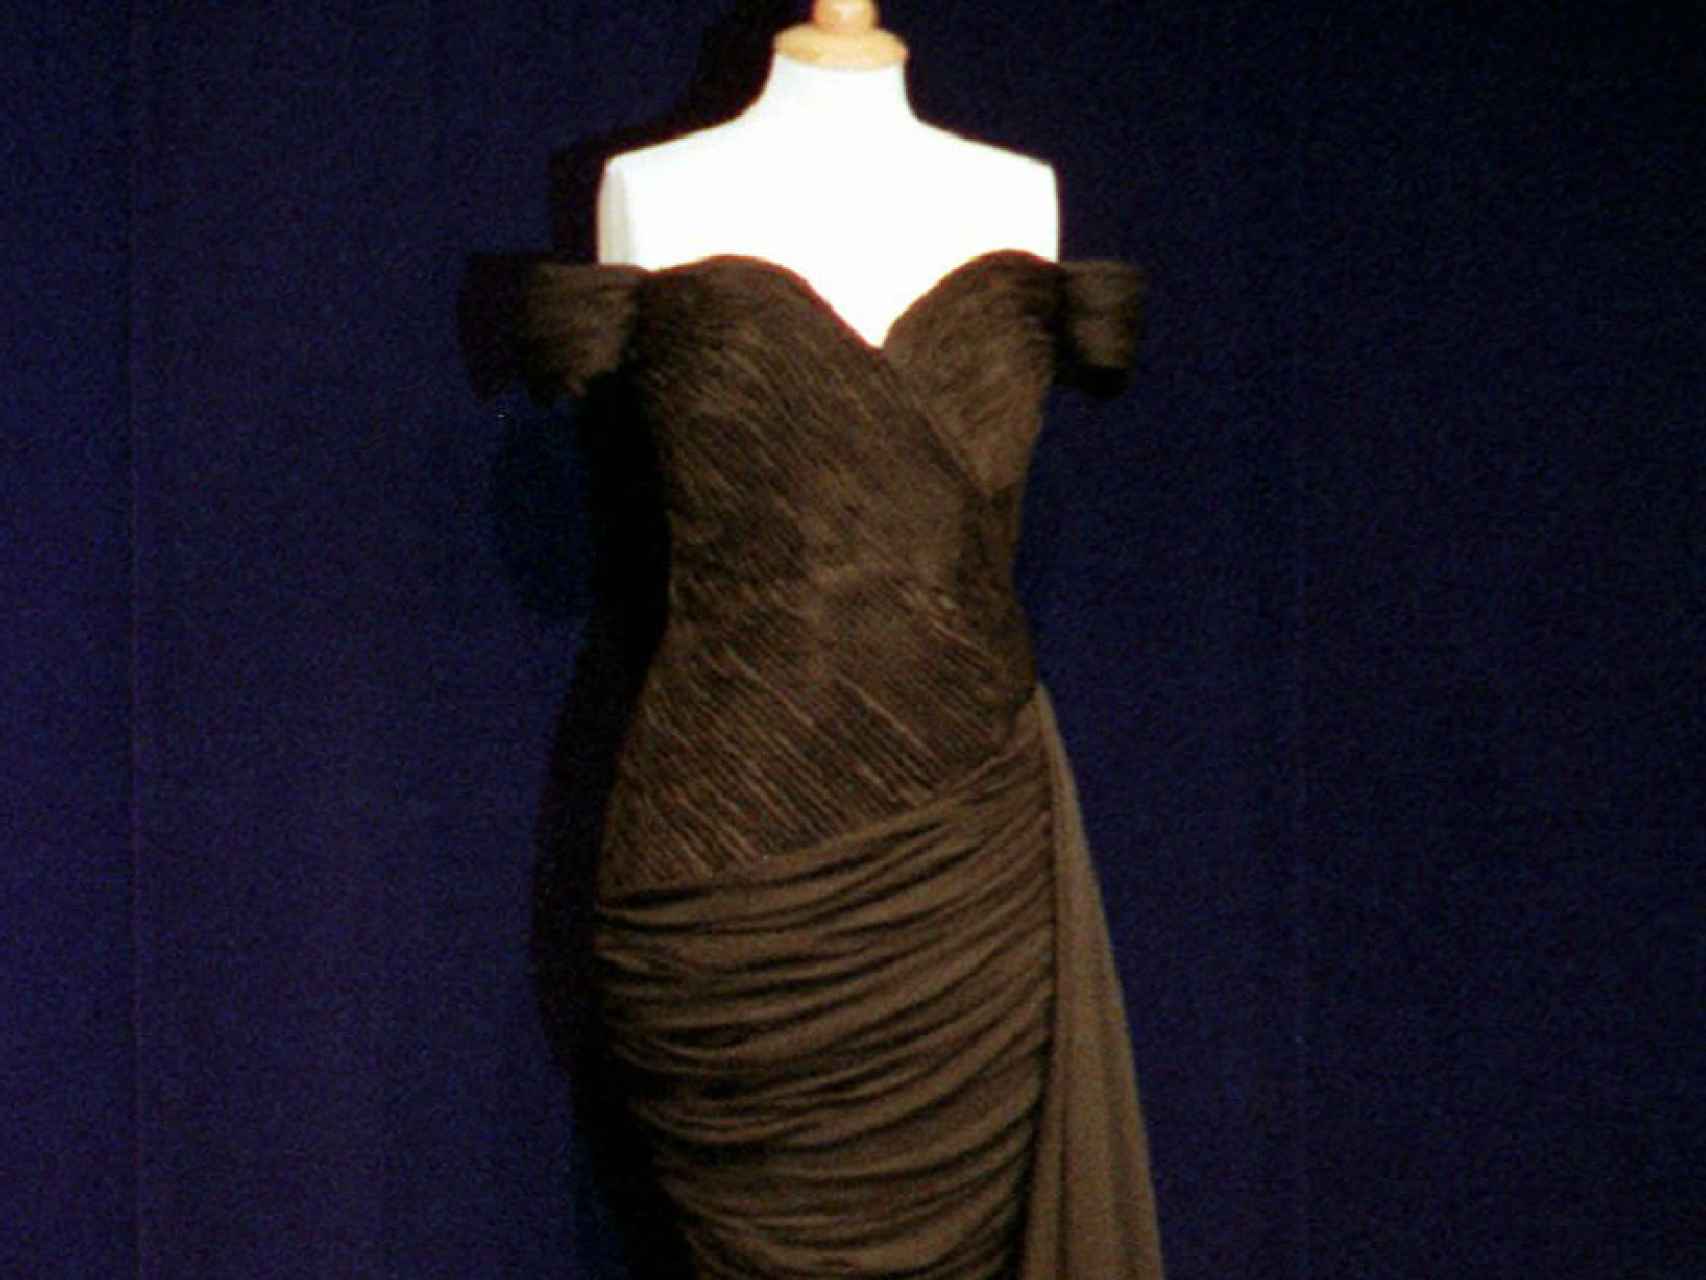 Stambolian es la firma del vestido por el que optó Diana.